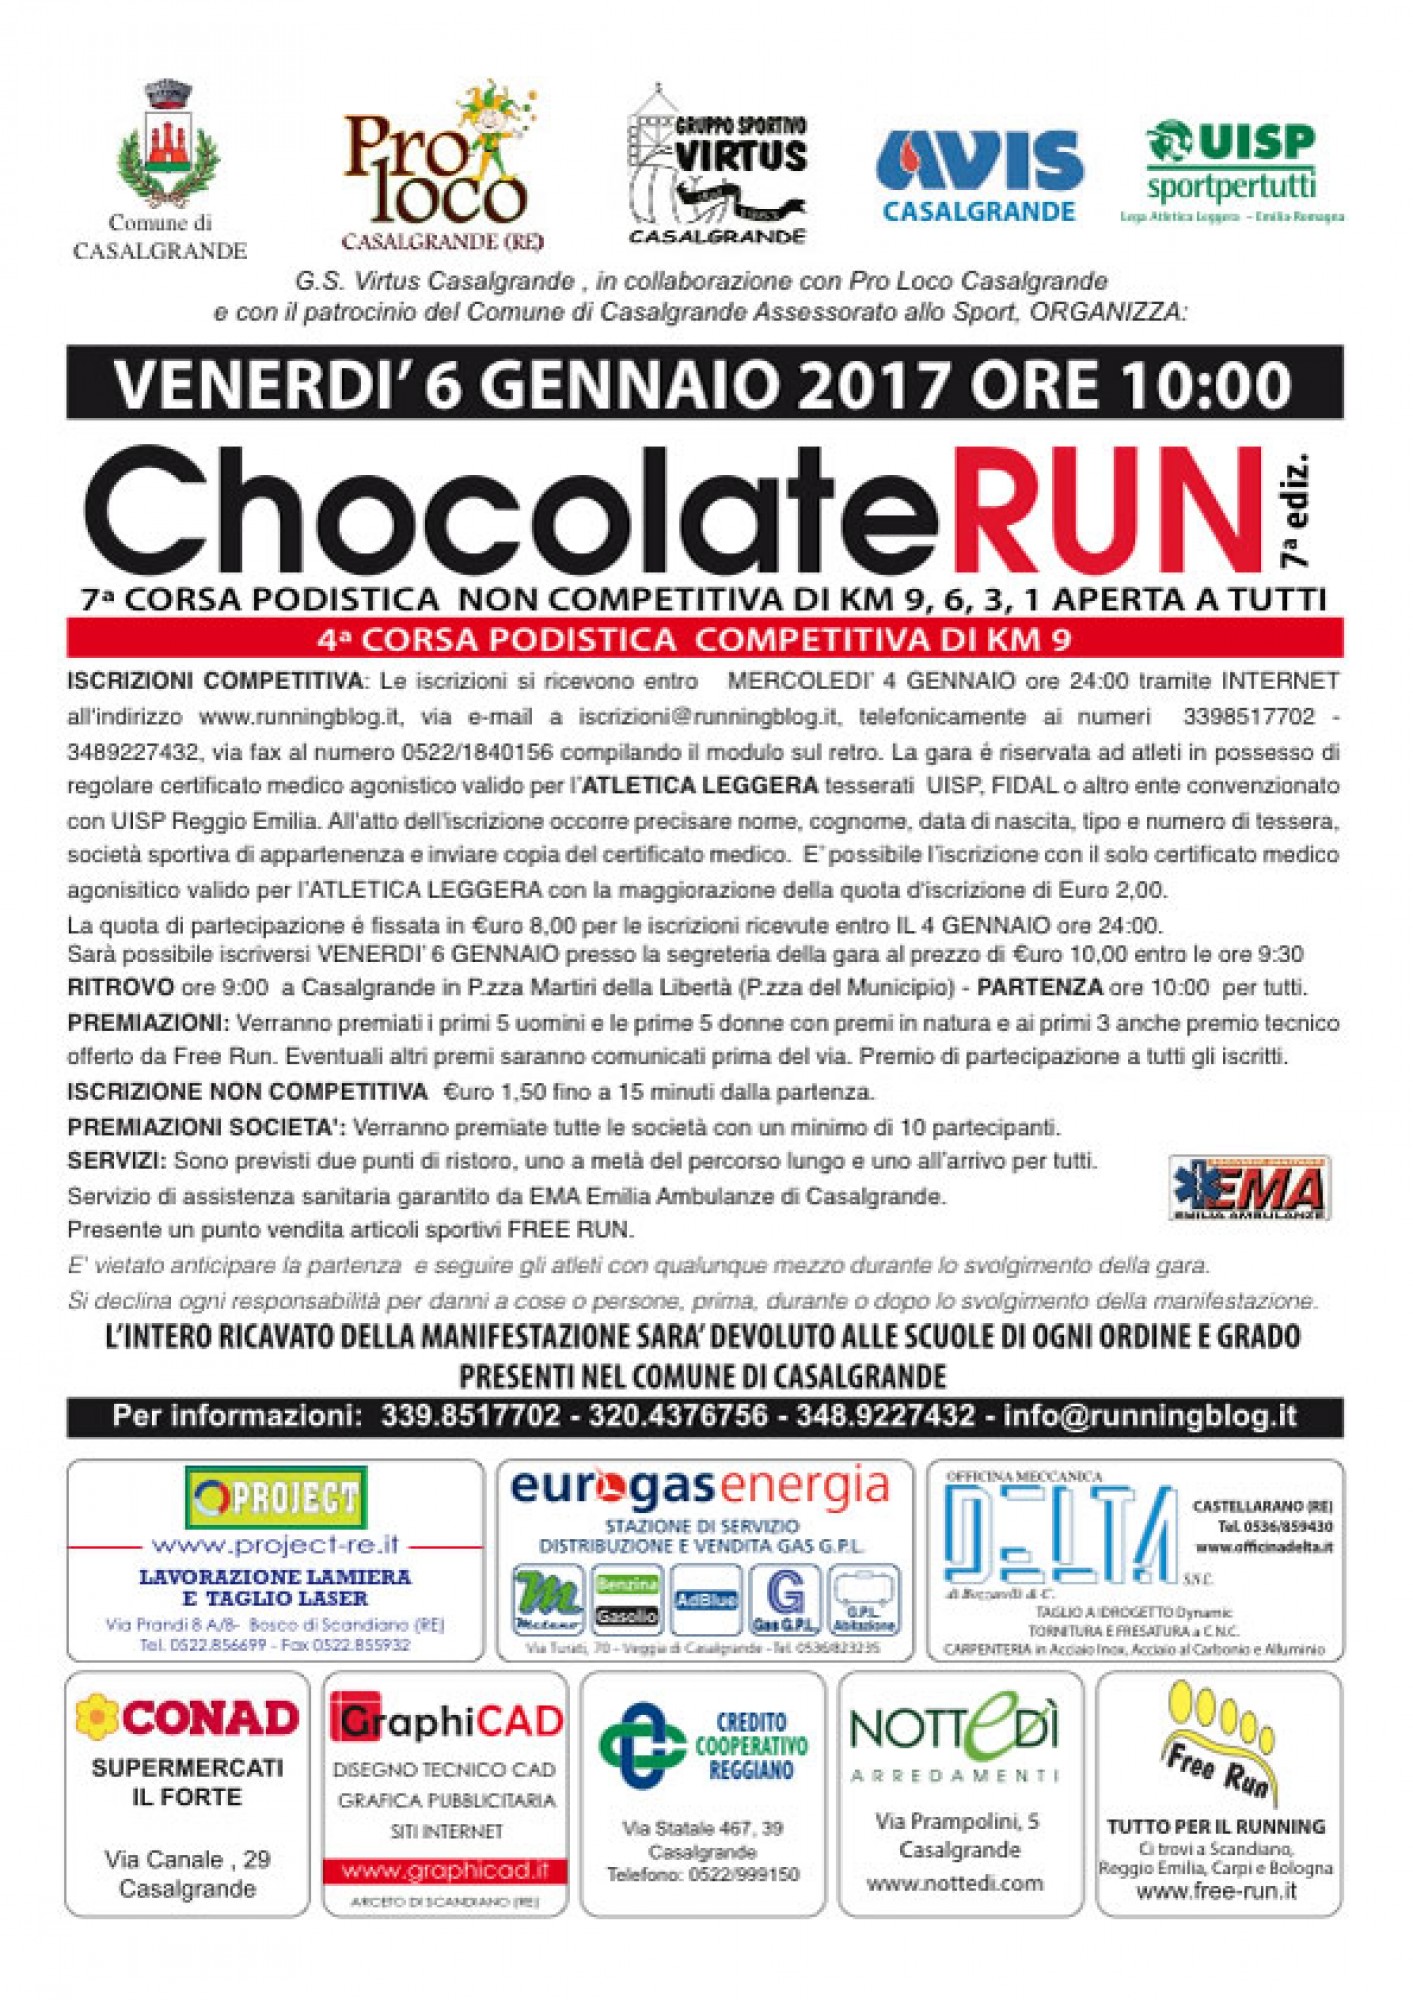 Chocolate Run 2017 